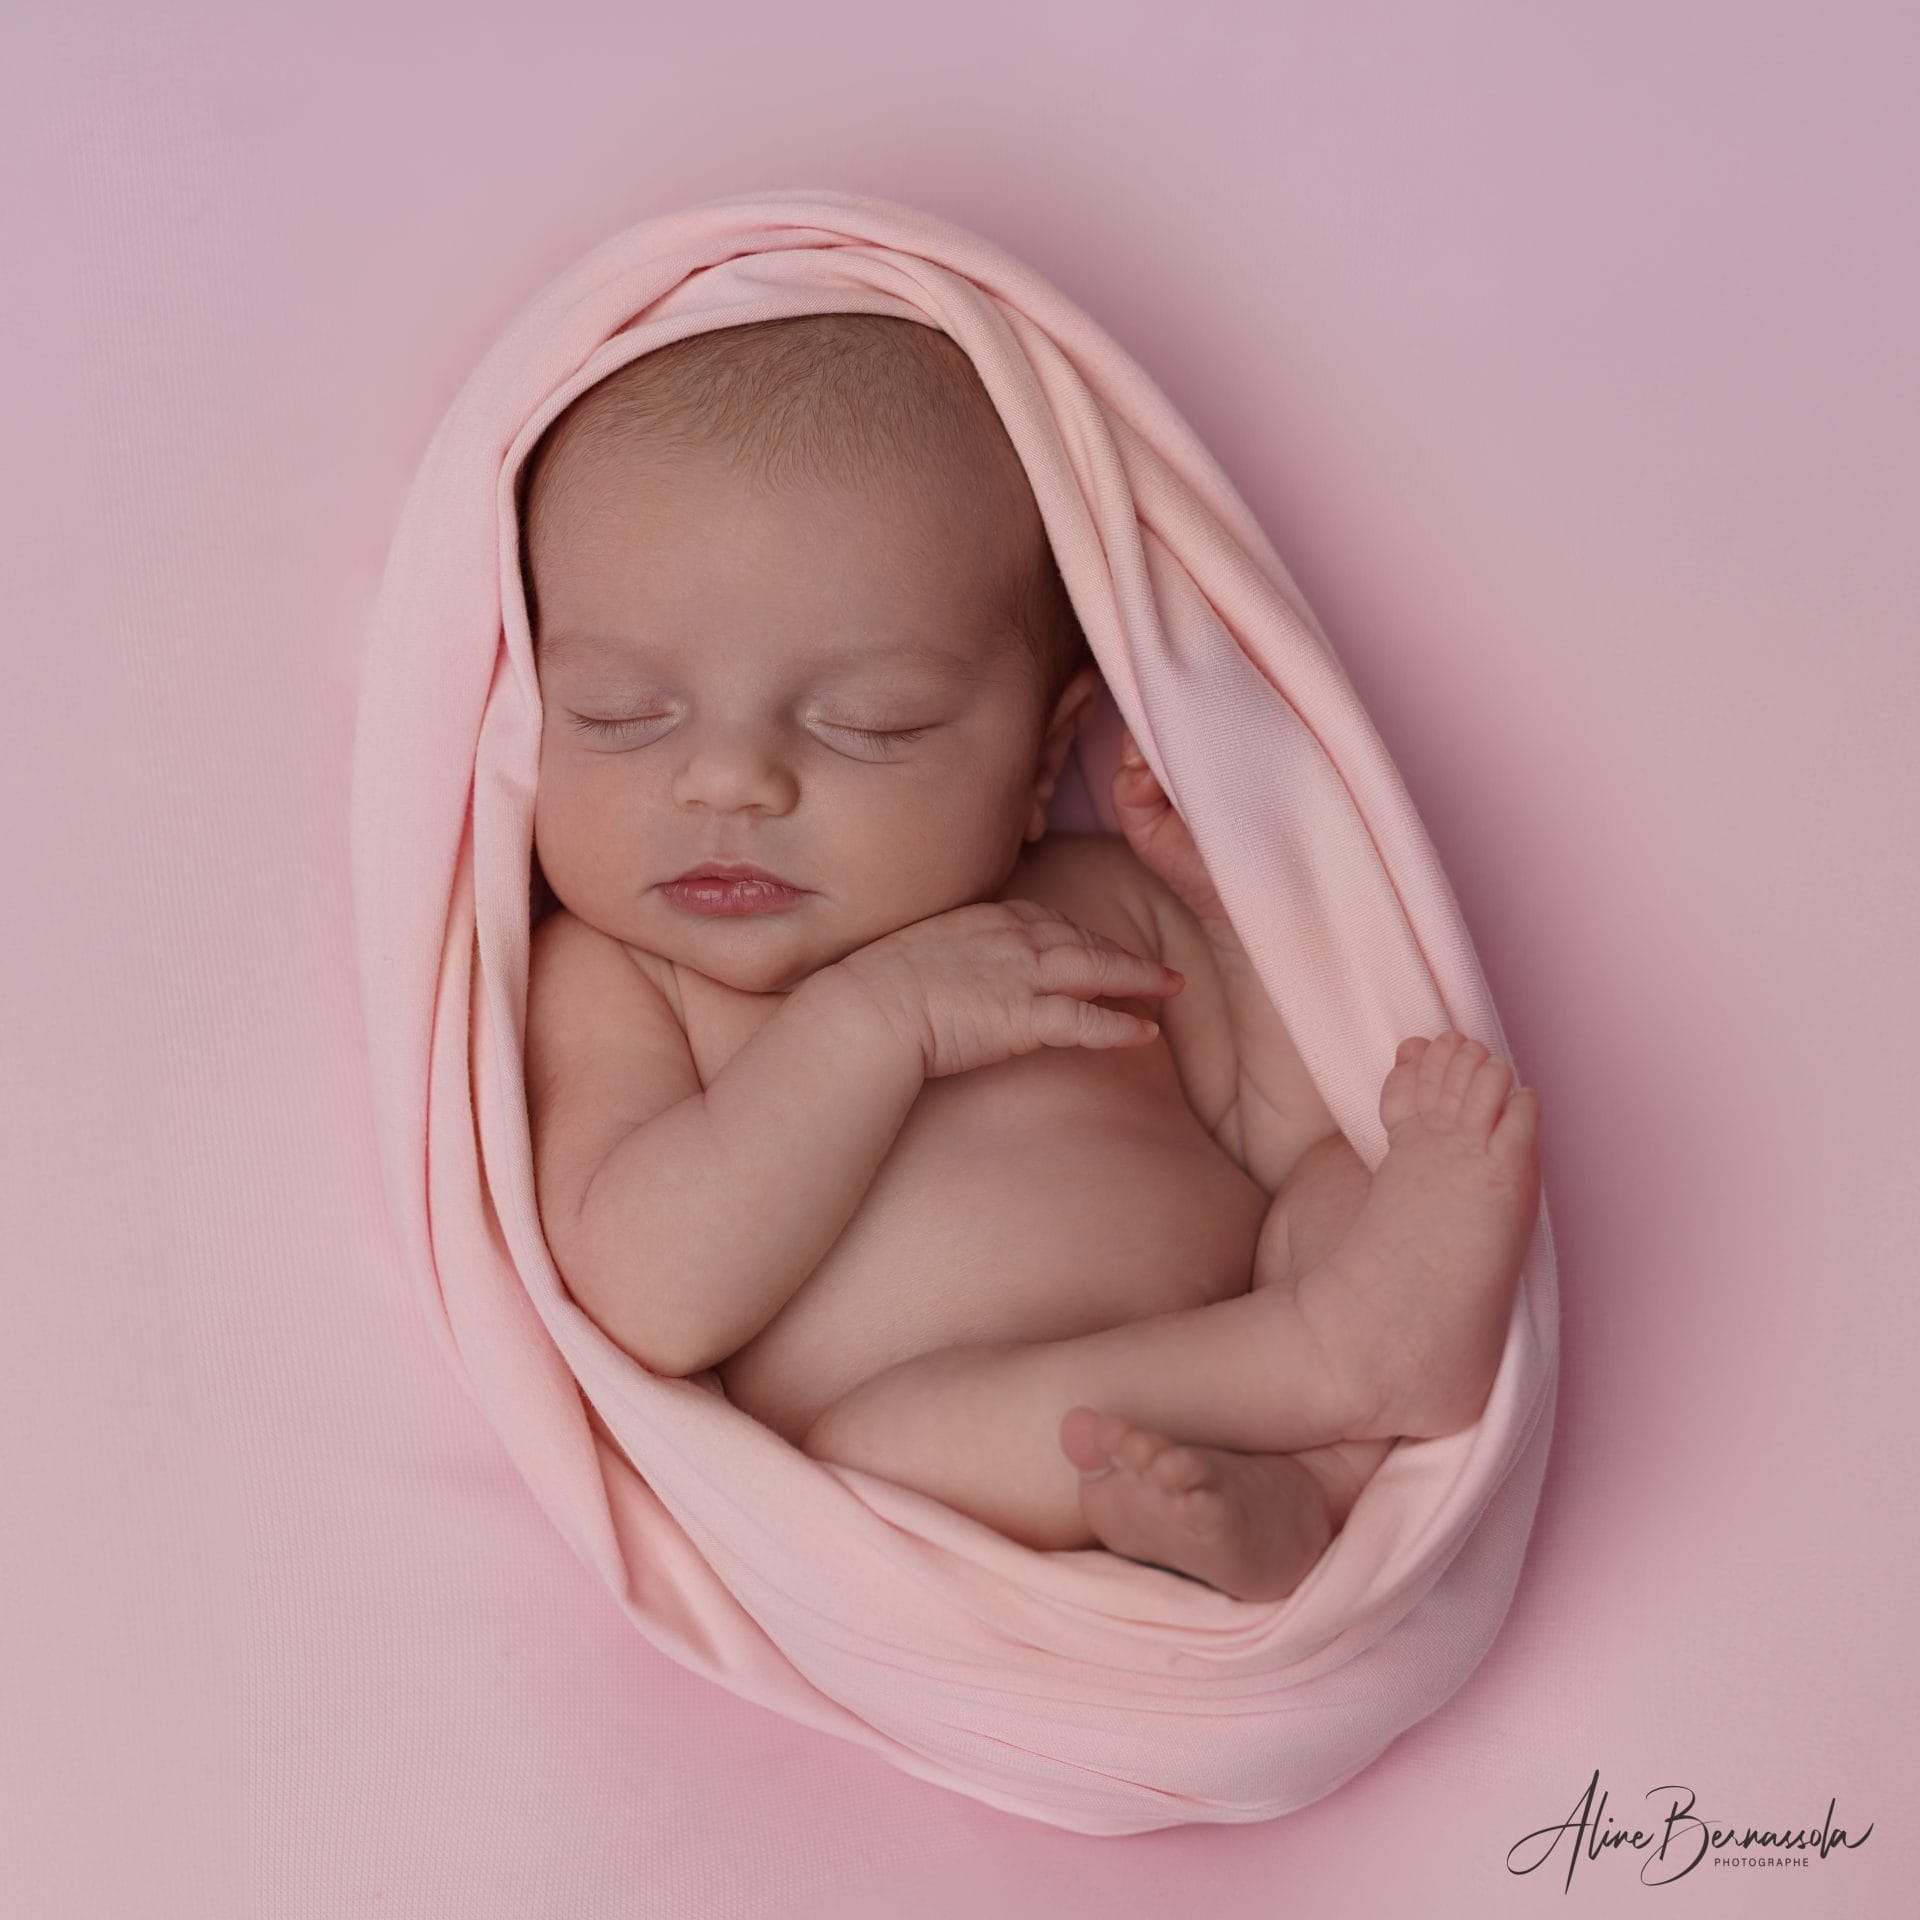 Séance photo studio bébé, pose cocoon, bébé endormi